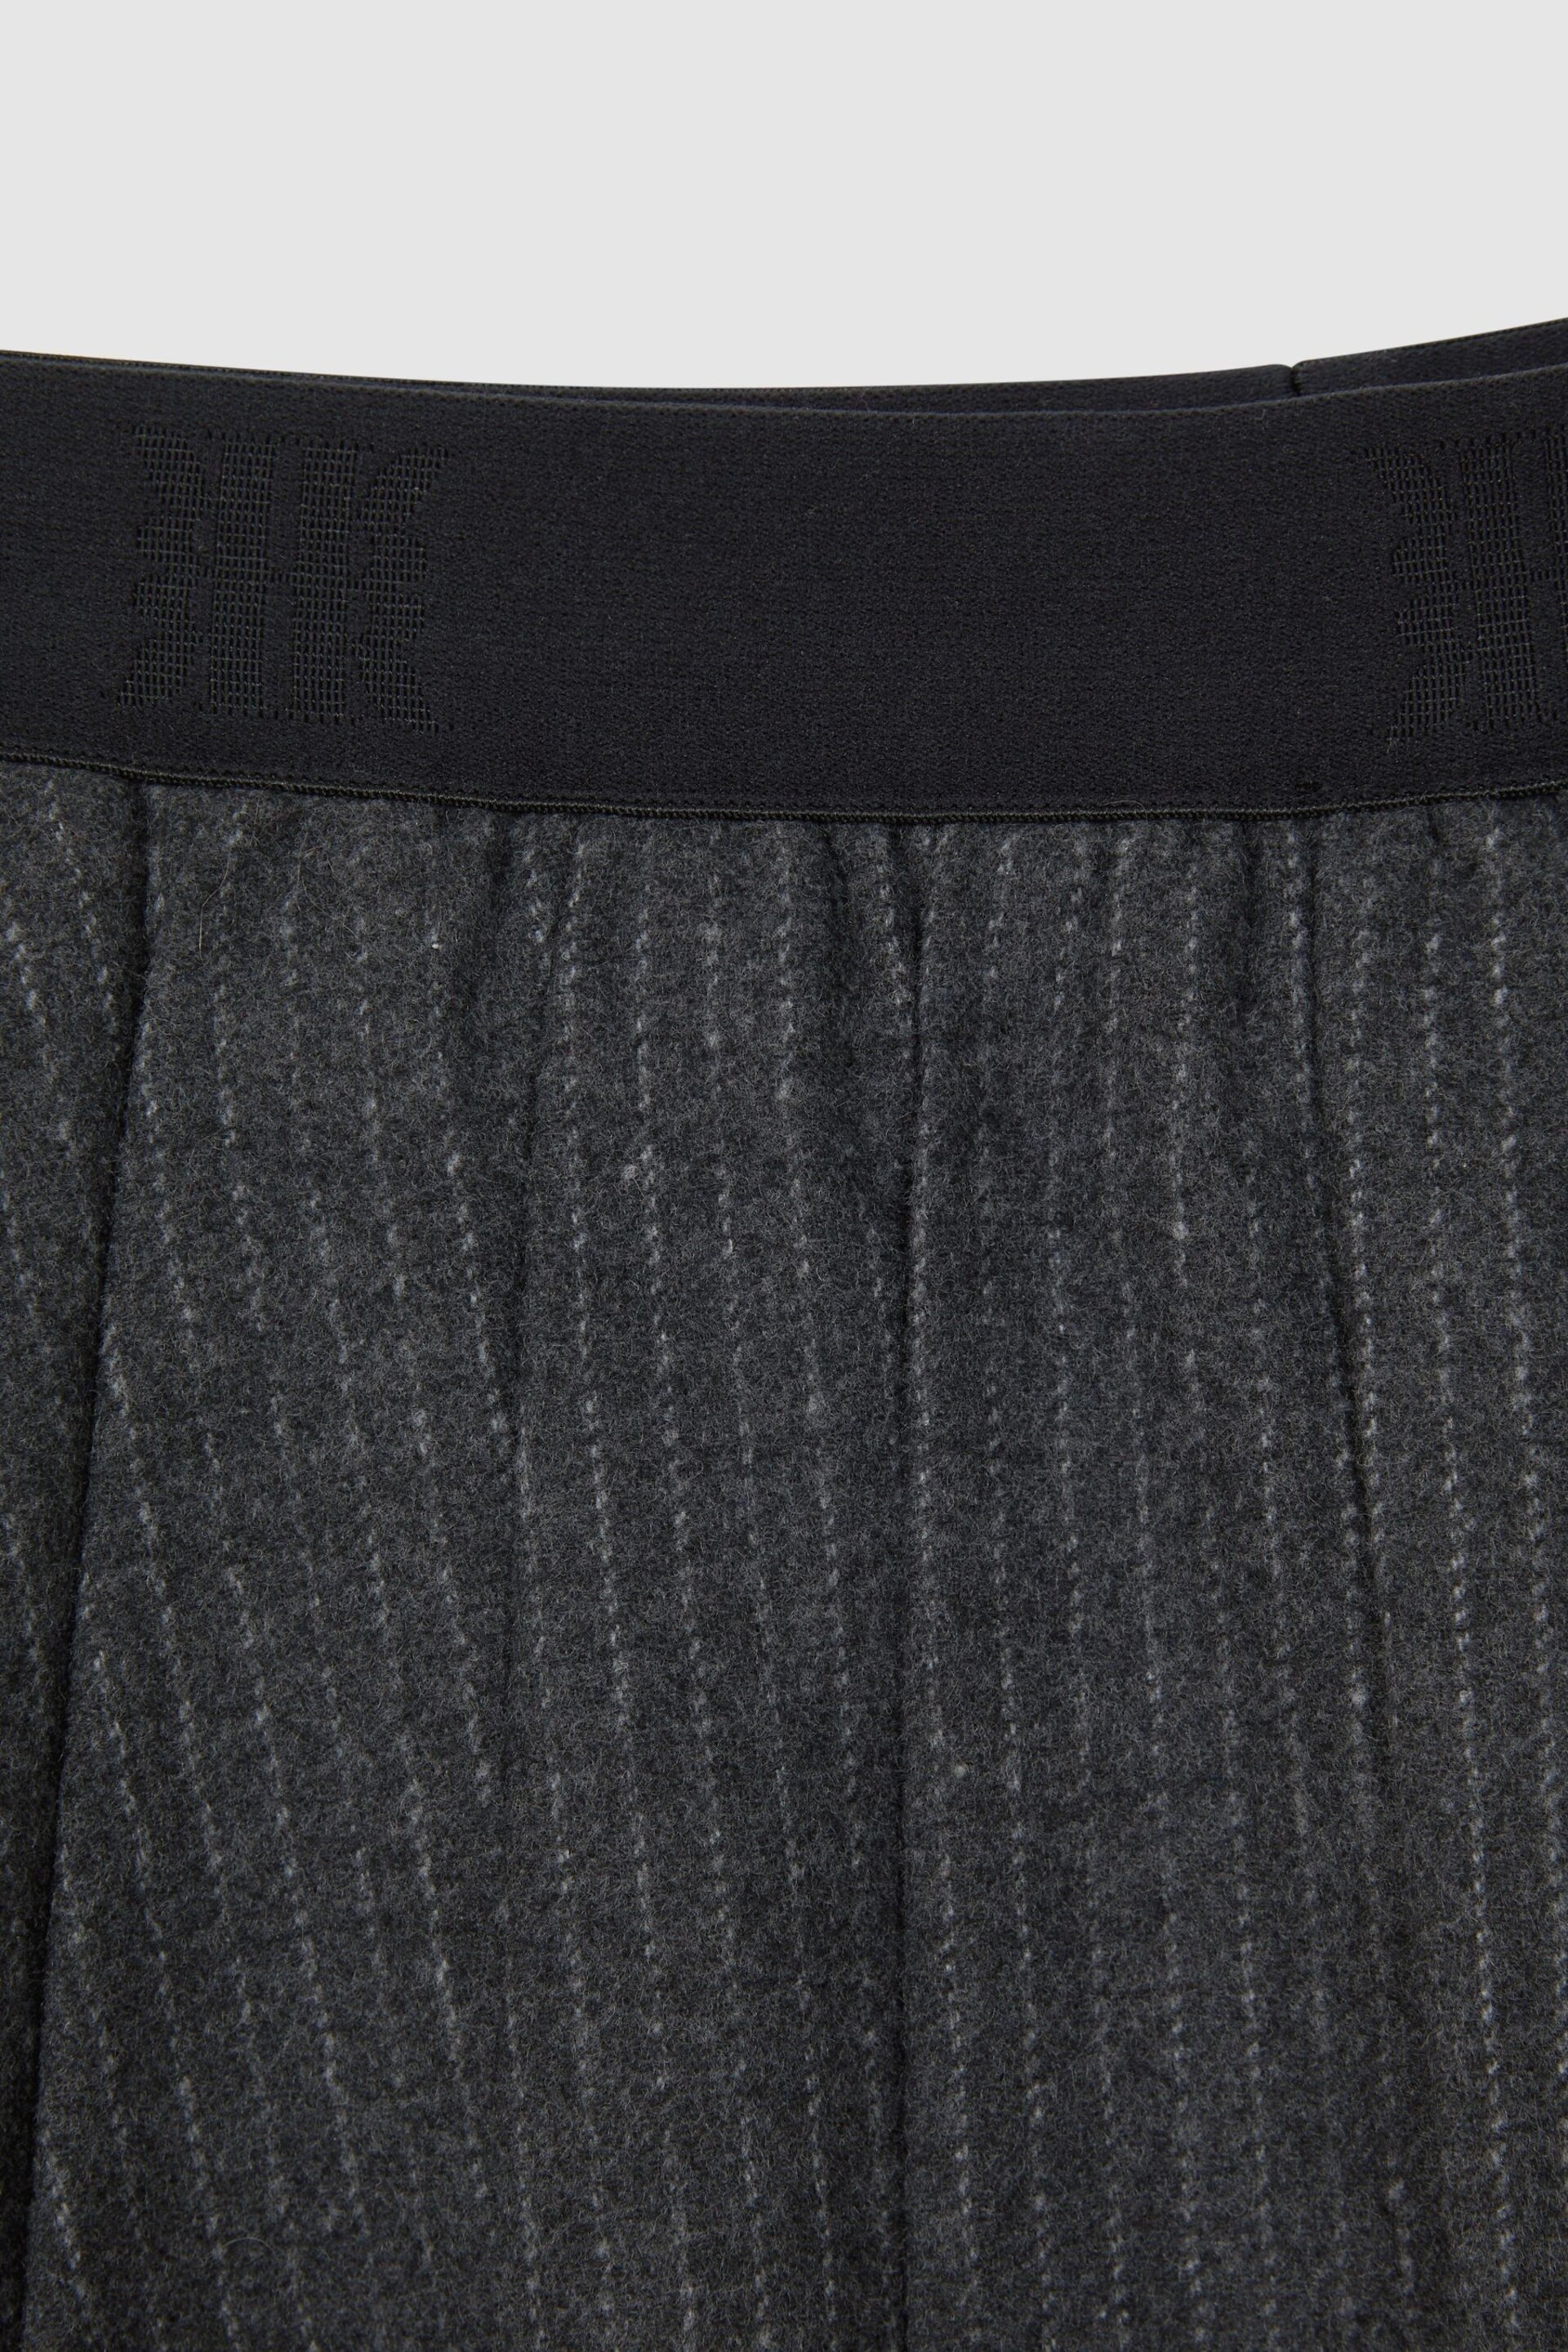 Reiss Dark Grey Marcie Junior Wool Blend Striped Pleated Skirt - Image 6 of 6